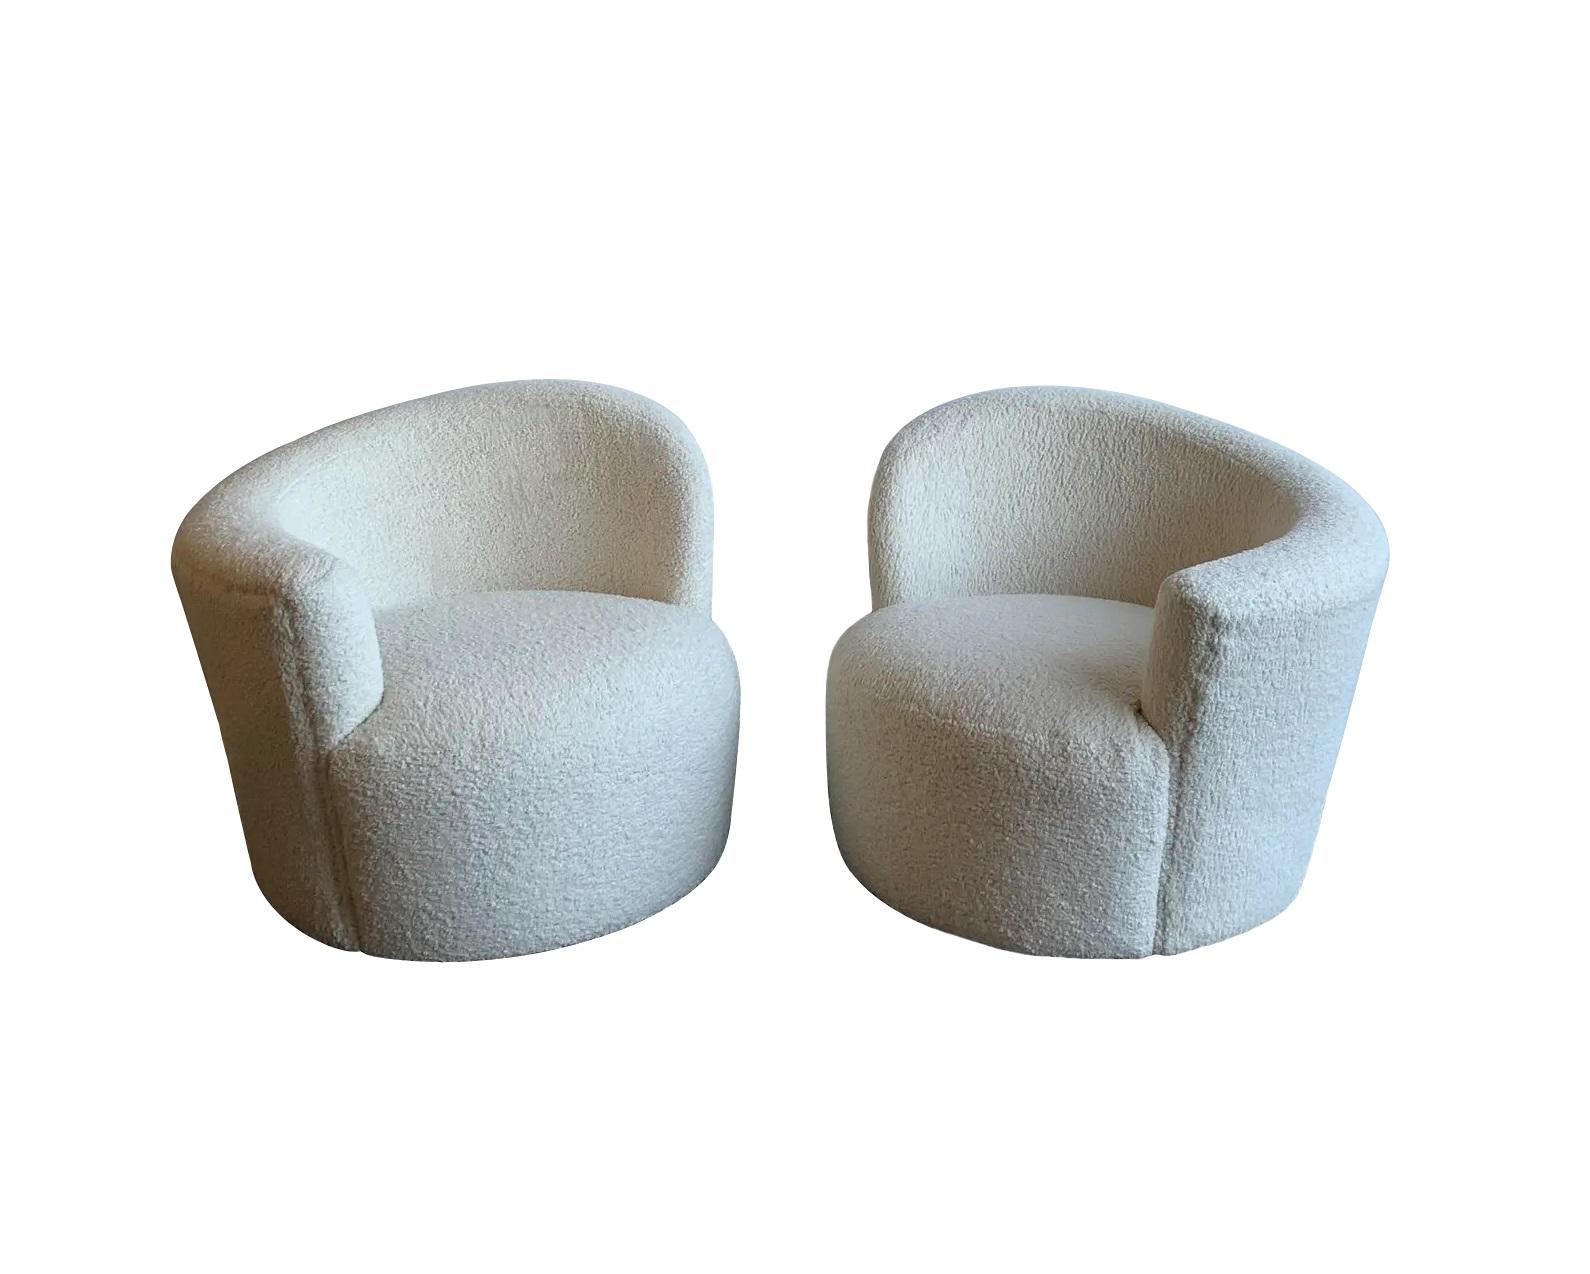 Un rêve de moderniste ! Nous vous proposons une superbe paire de chaises nautiles restaurées, produites par Vladimir Kagan, l'un des designers les plus célèbres et les plus influents du XXe siècle aux États-Unis. La silhouette du nautile illustre